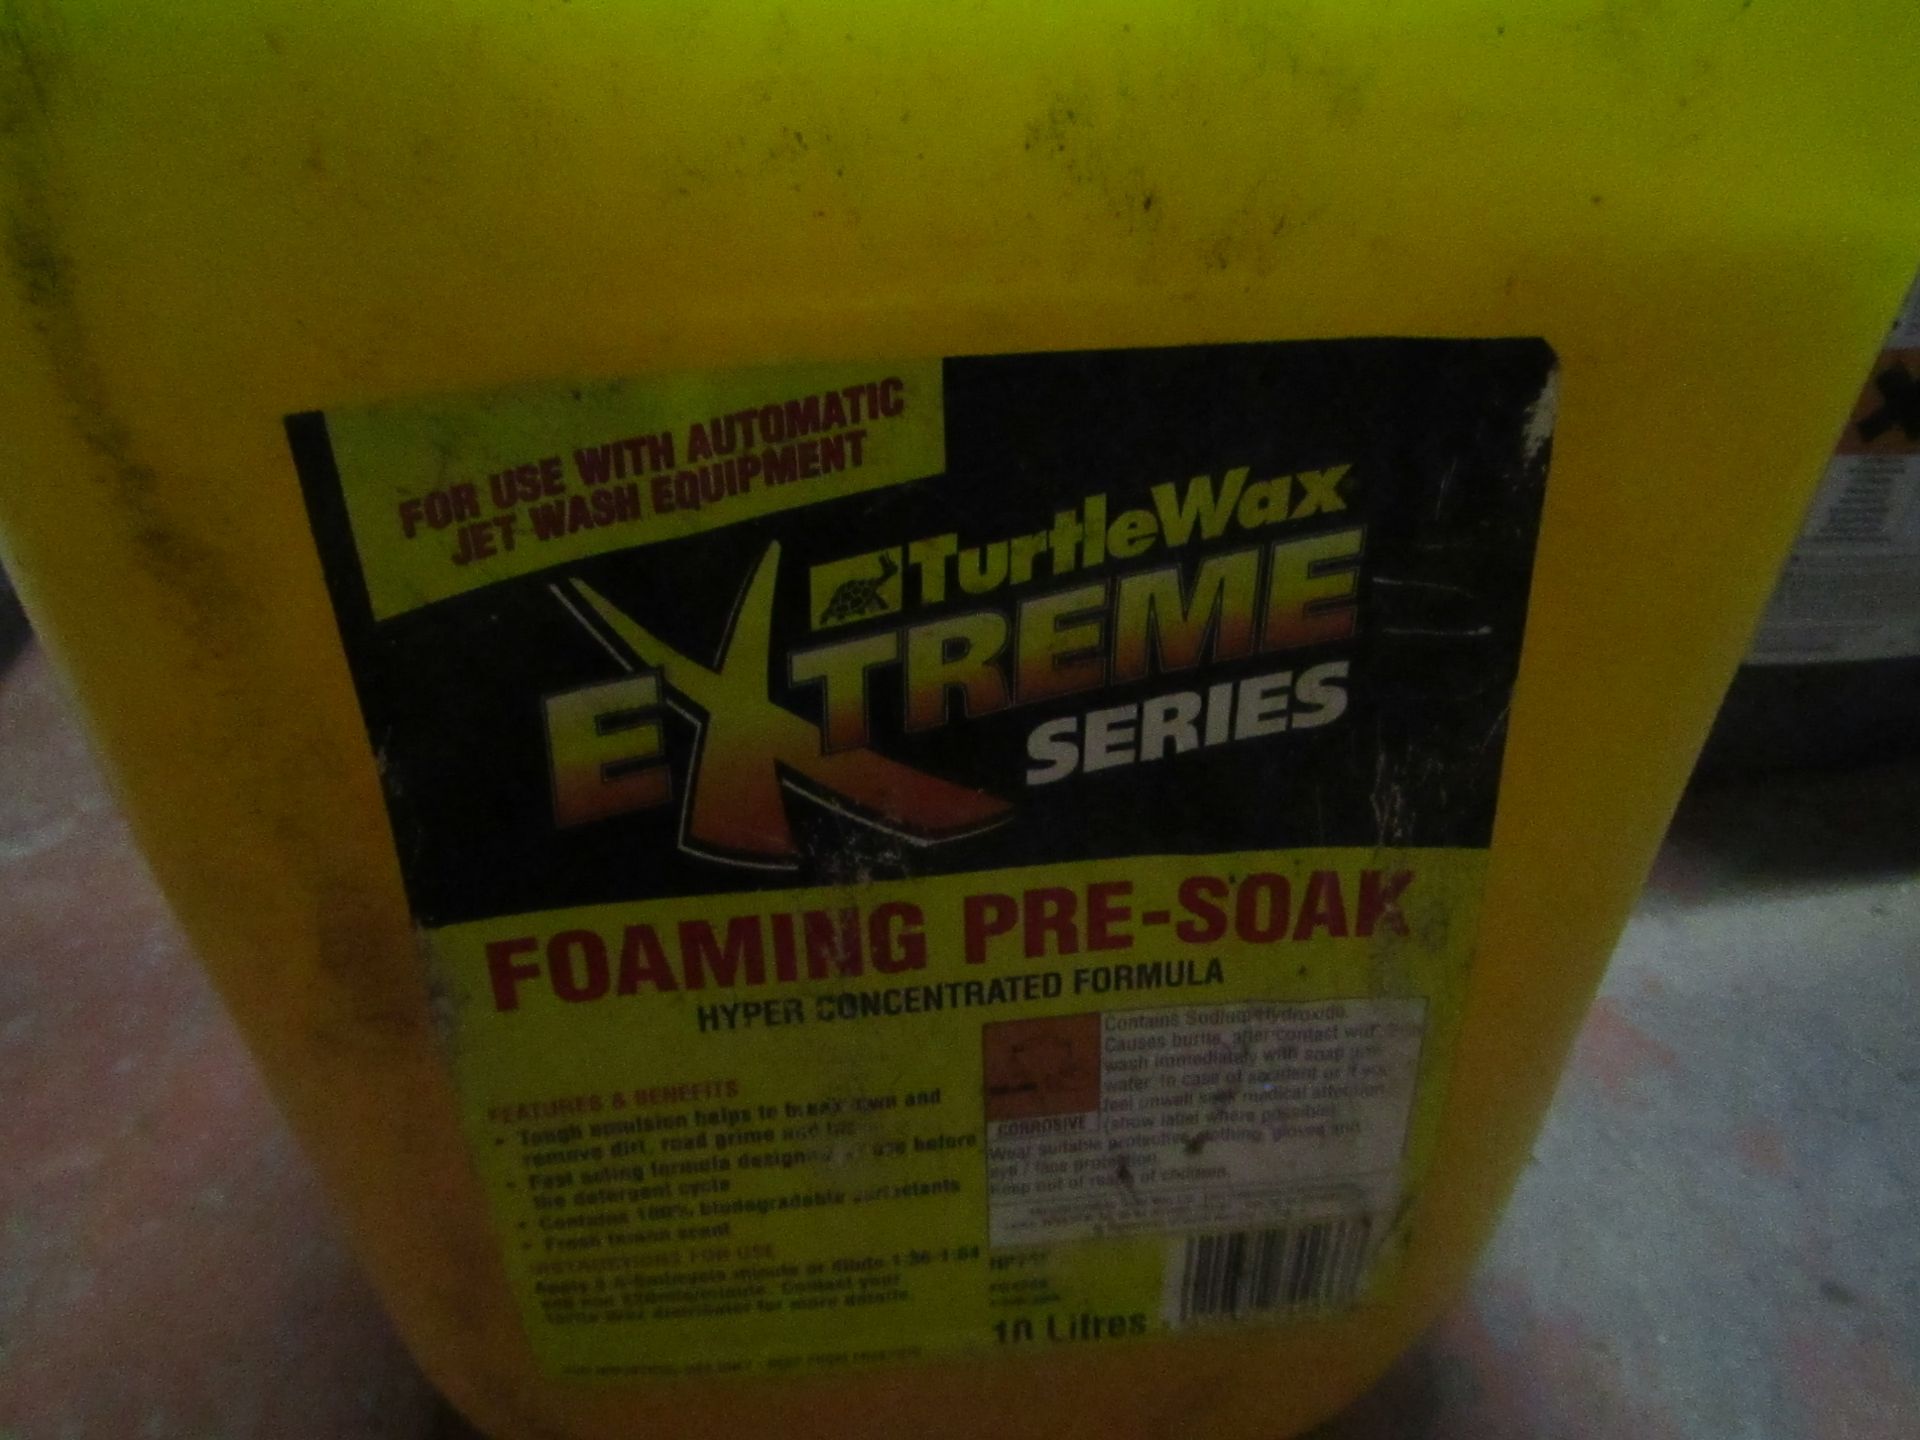 TurtleWax - Foaming Pre-Soak 10 Litres - Unused.